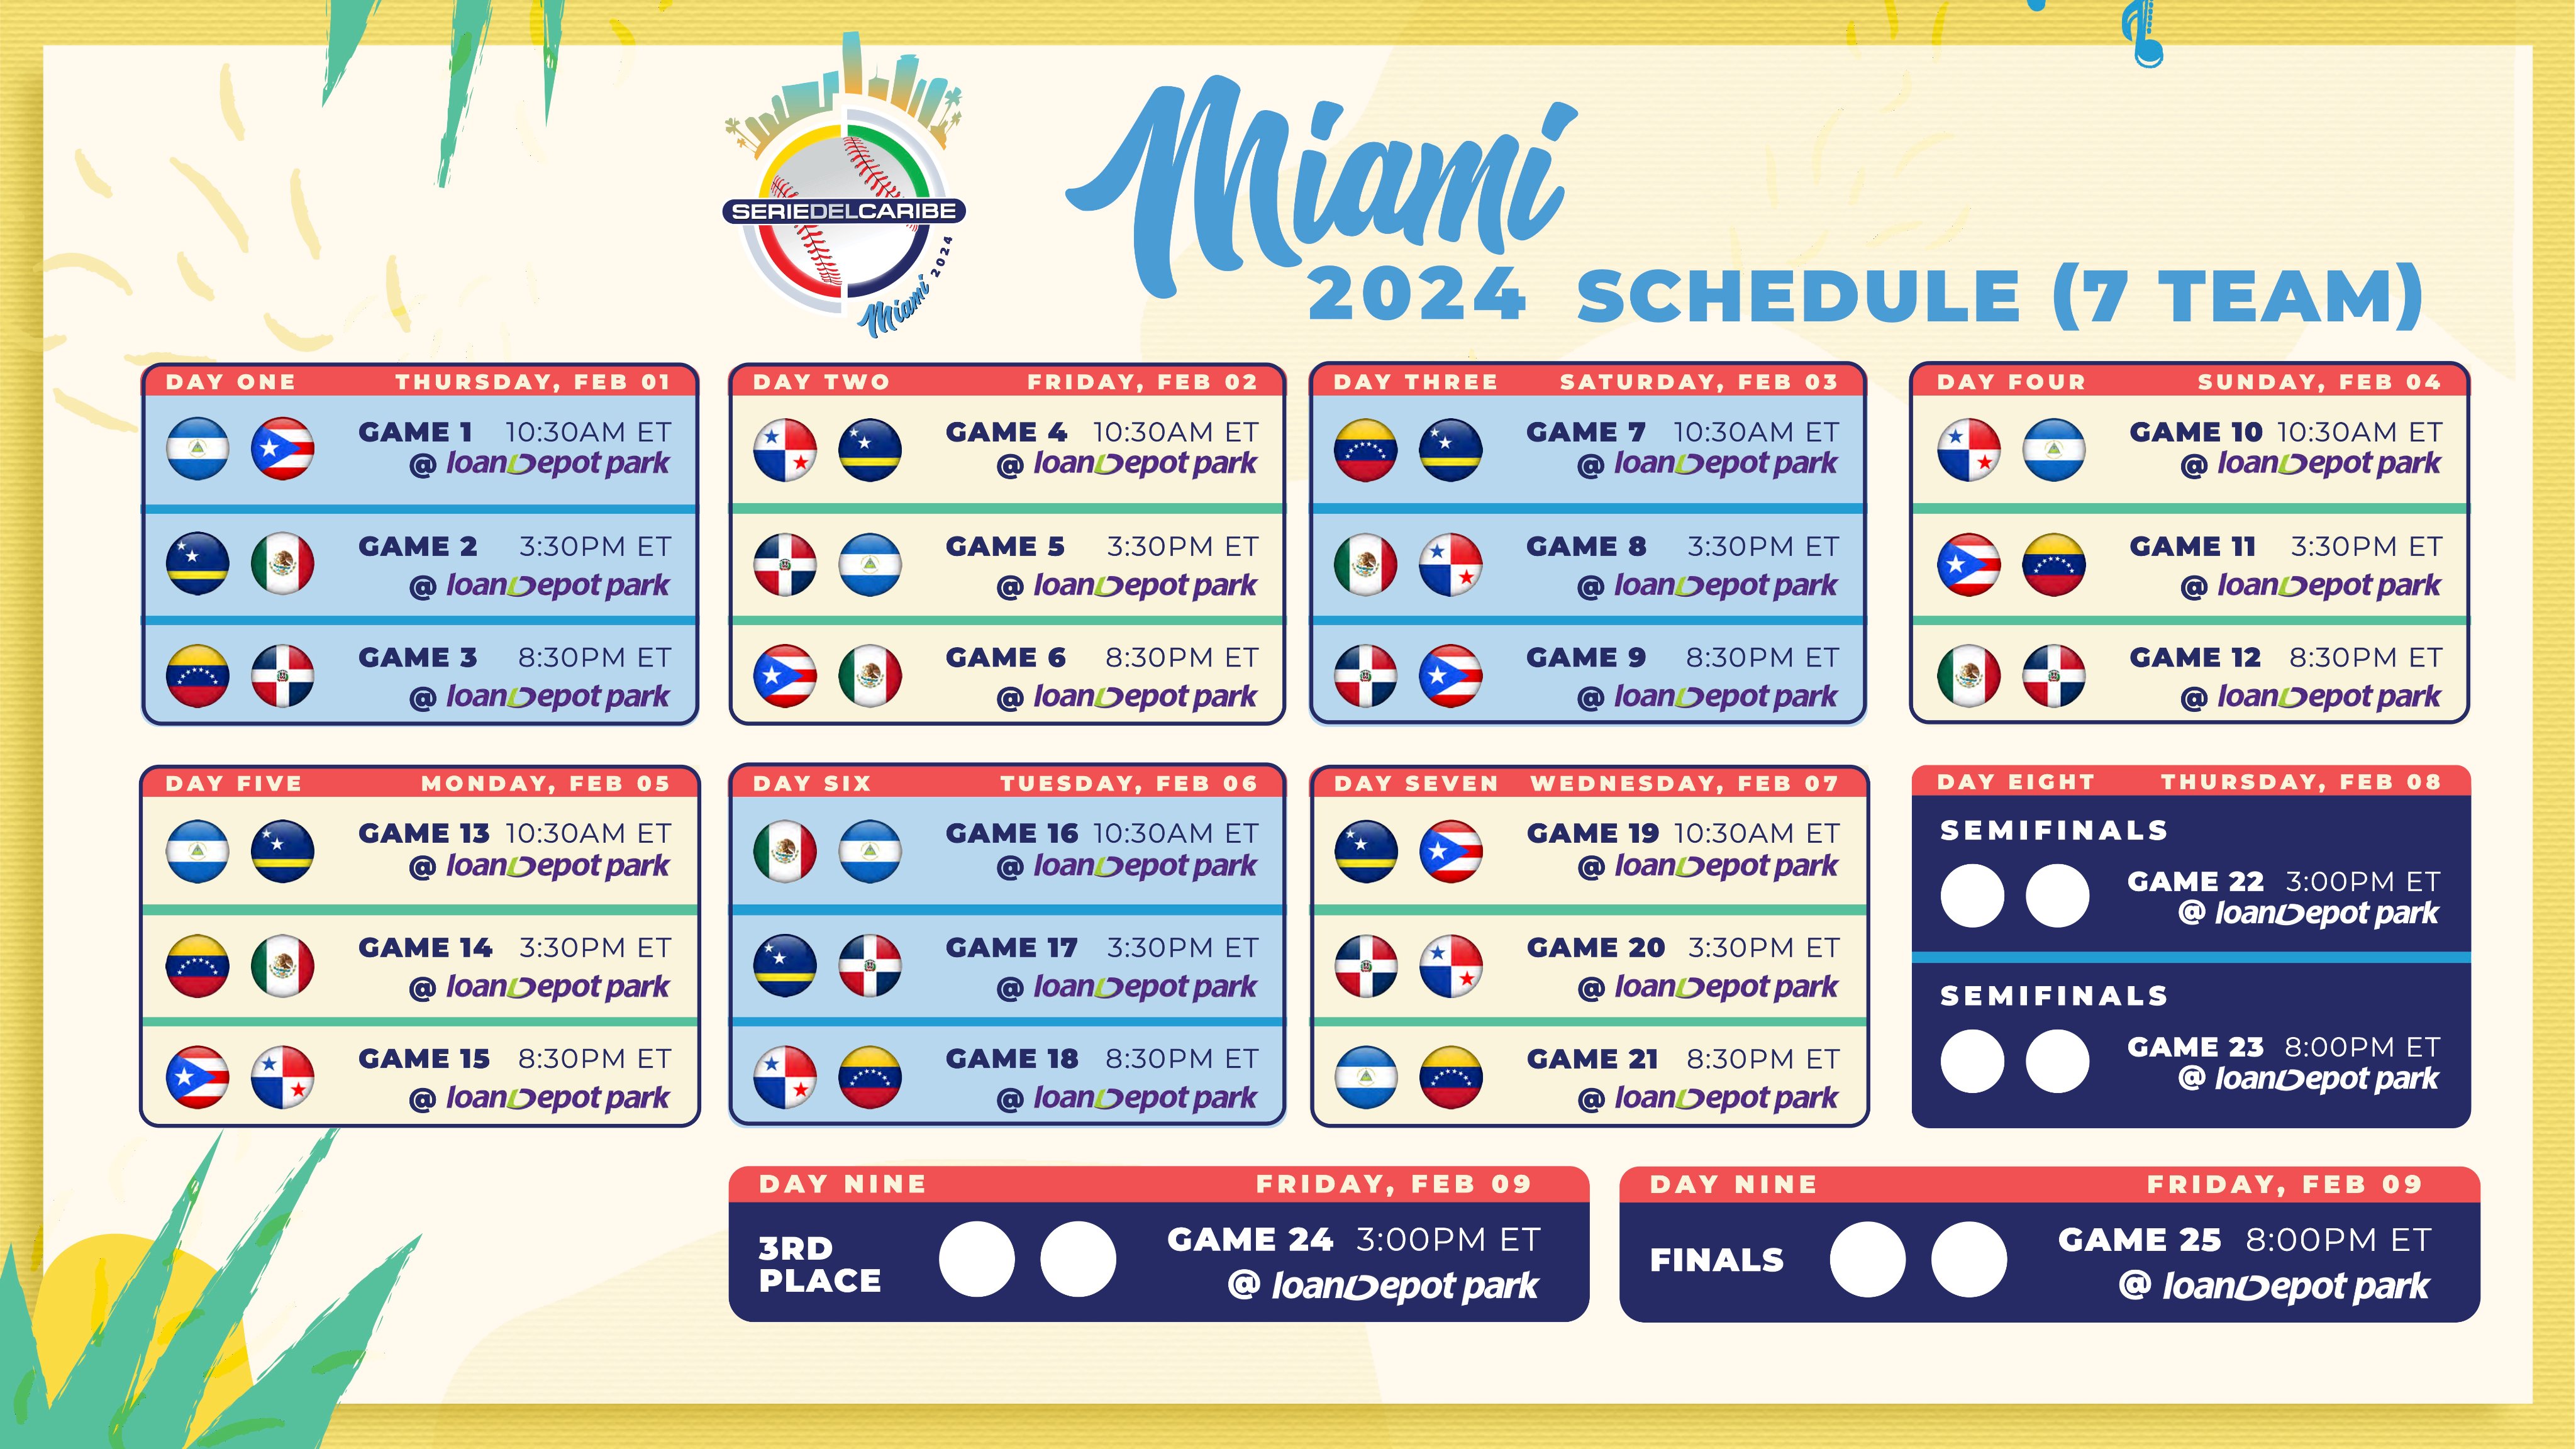 Serie del Caribe Miami 2024